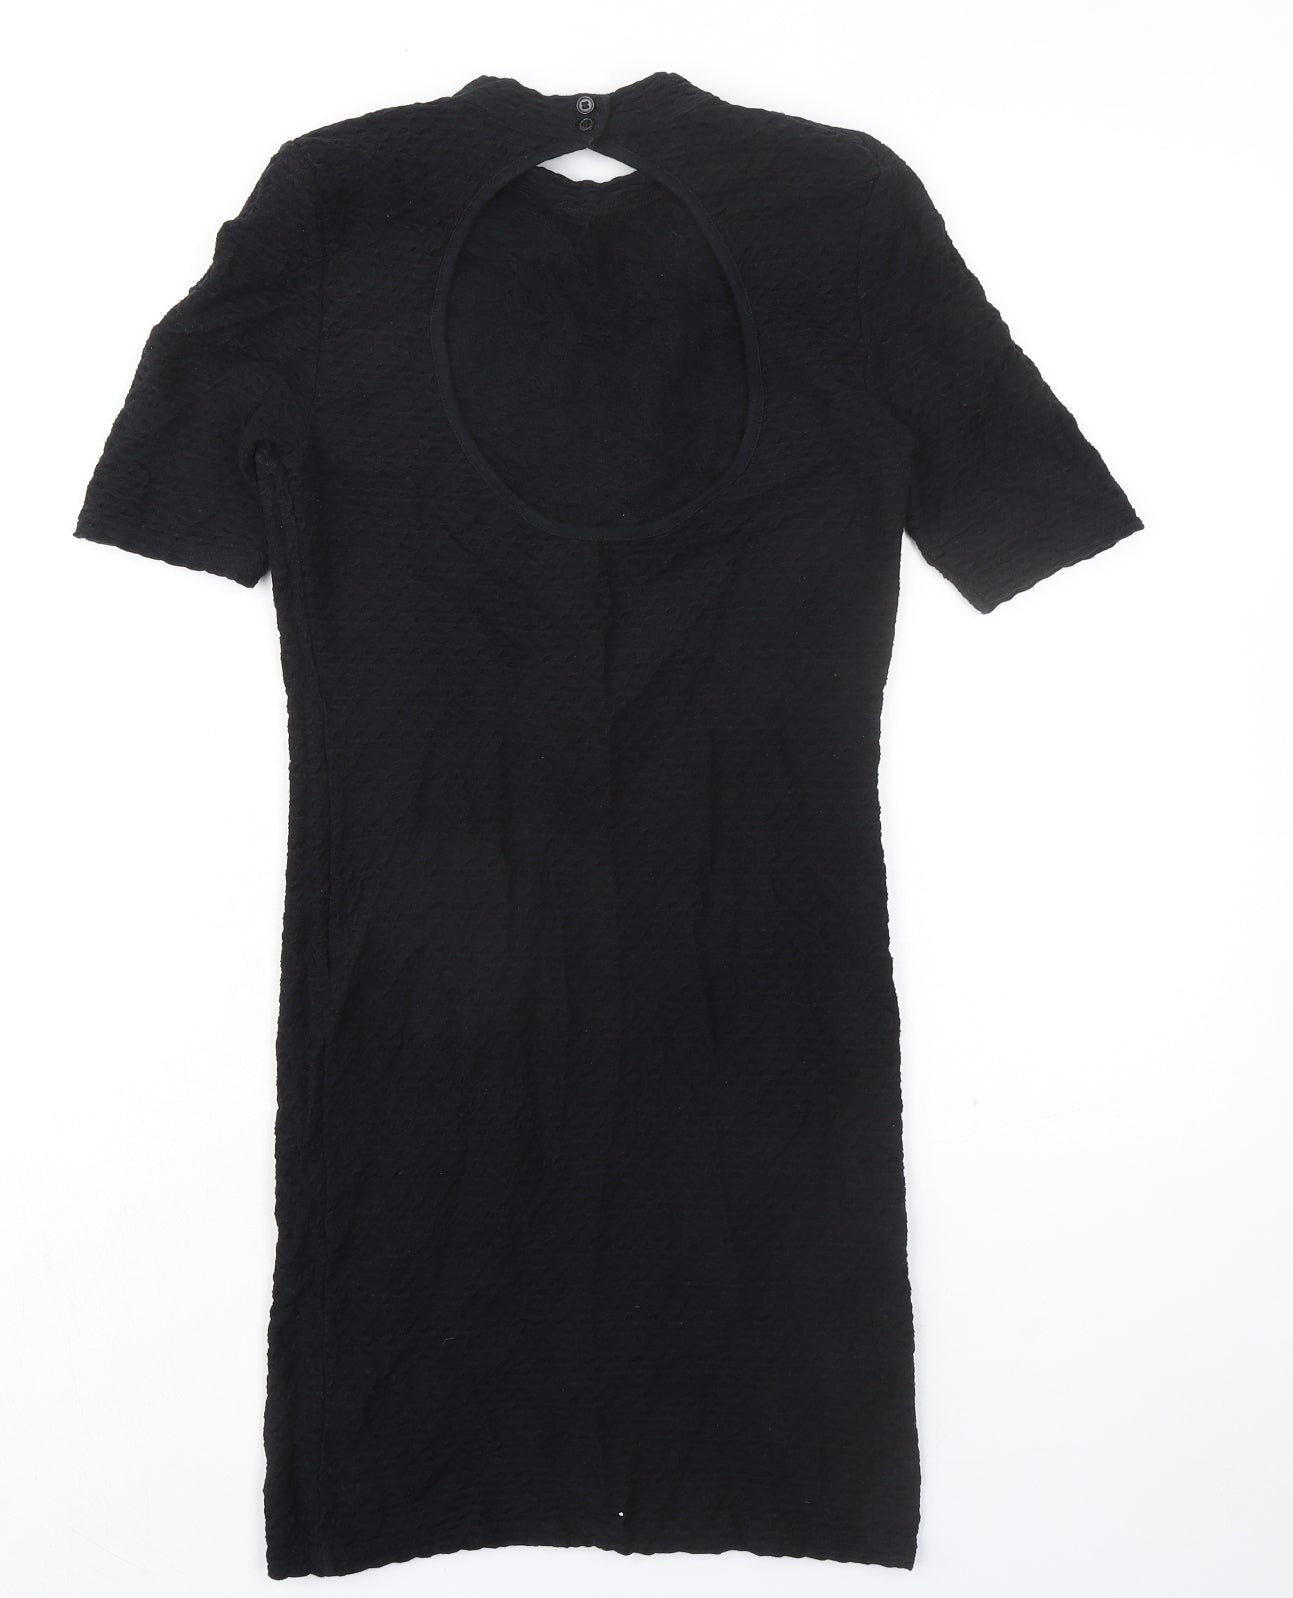 Topshop Womens Black Cotton Shift Size 12 Mock Neck Button